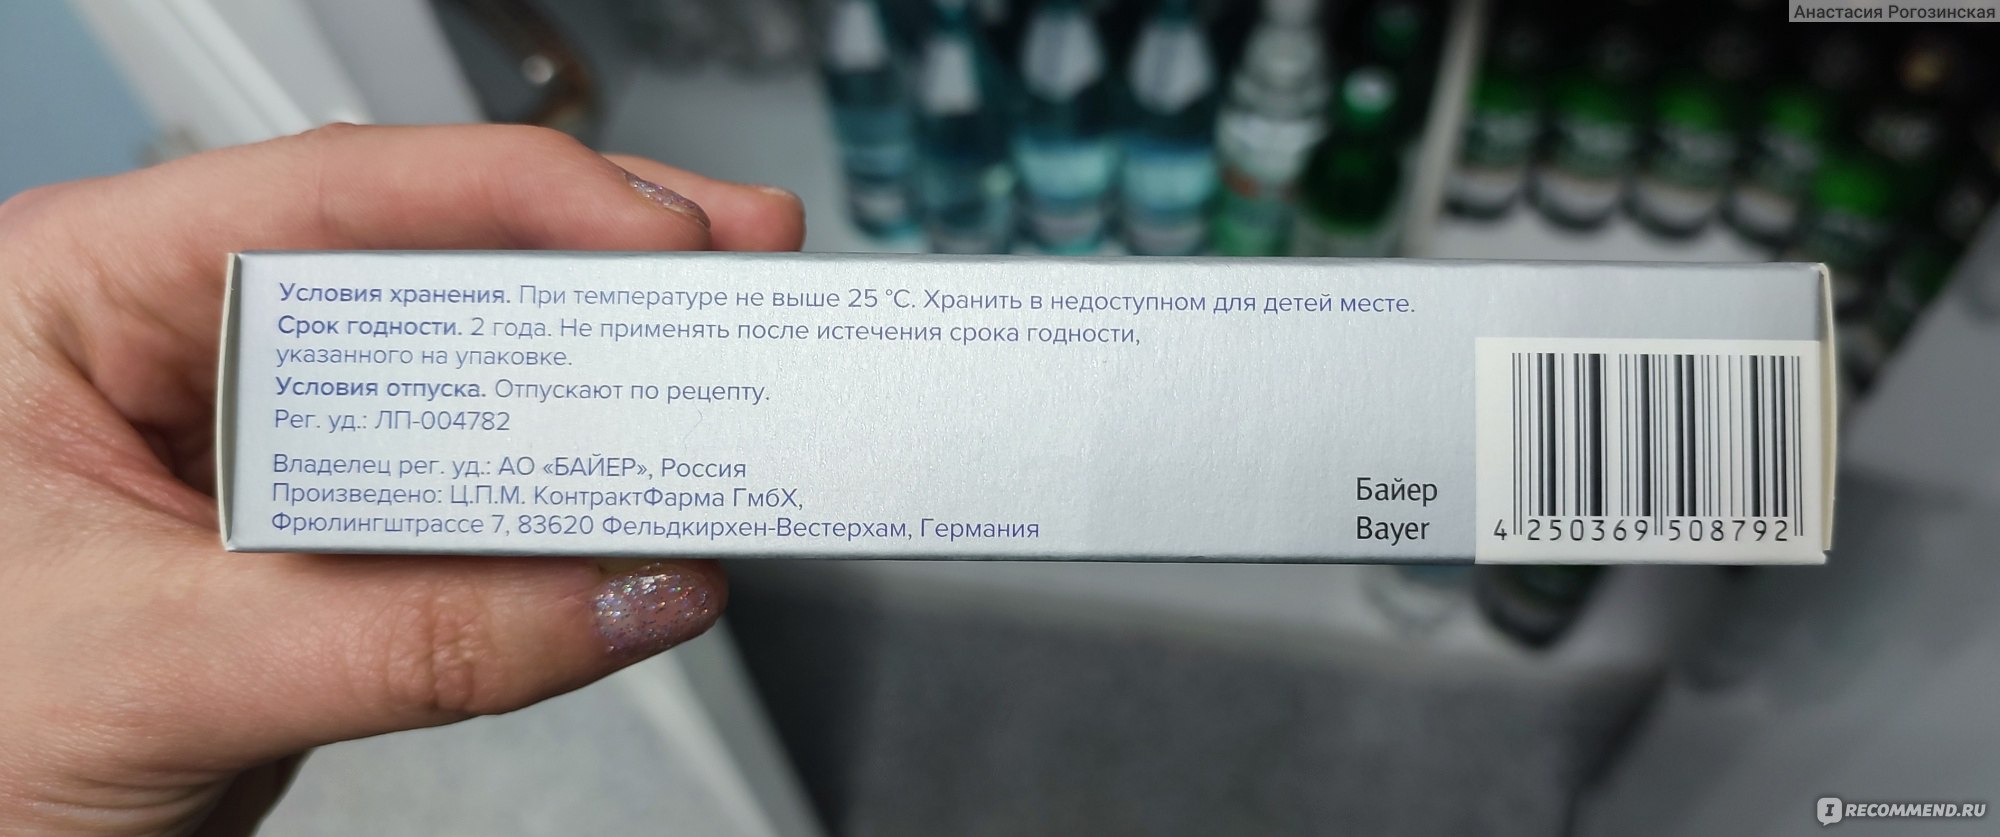 Гель Bayer Релифипин для ректального и наружного применения .